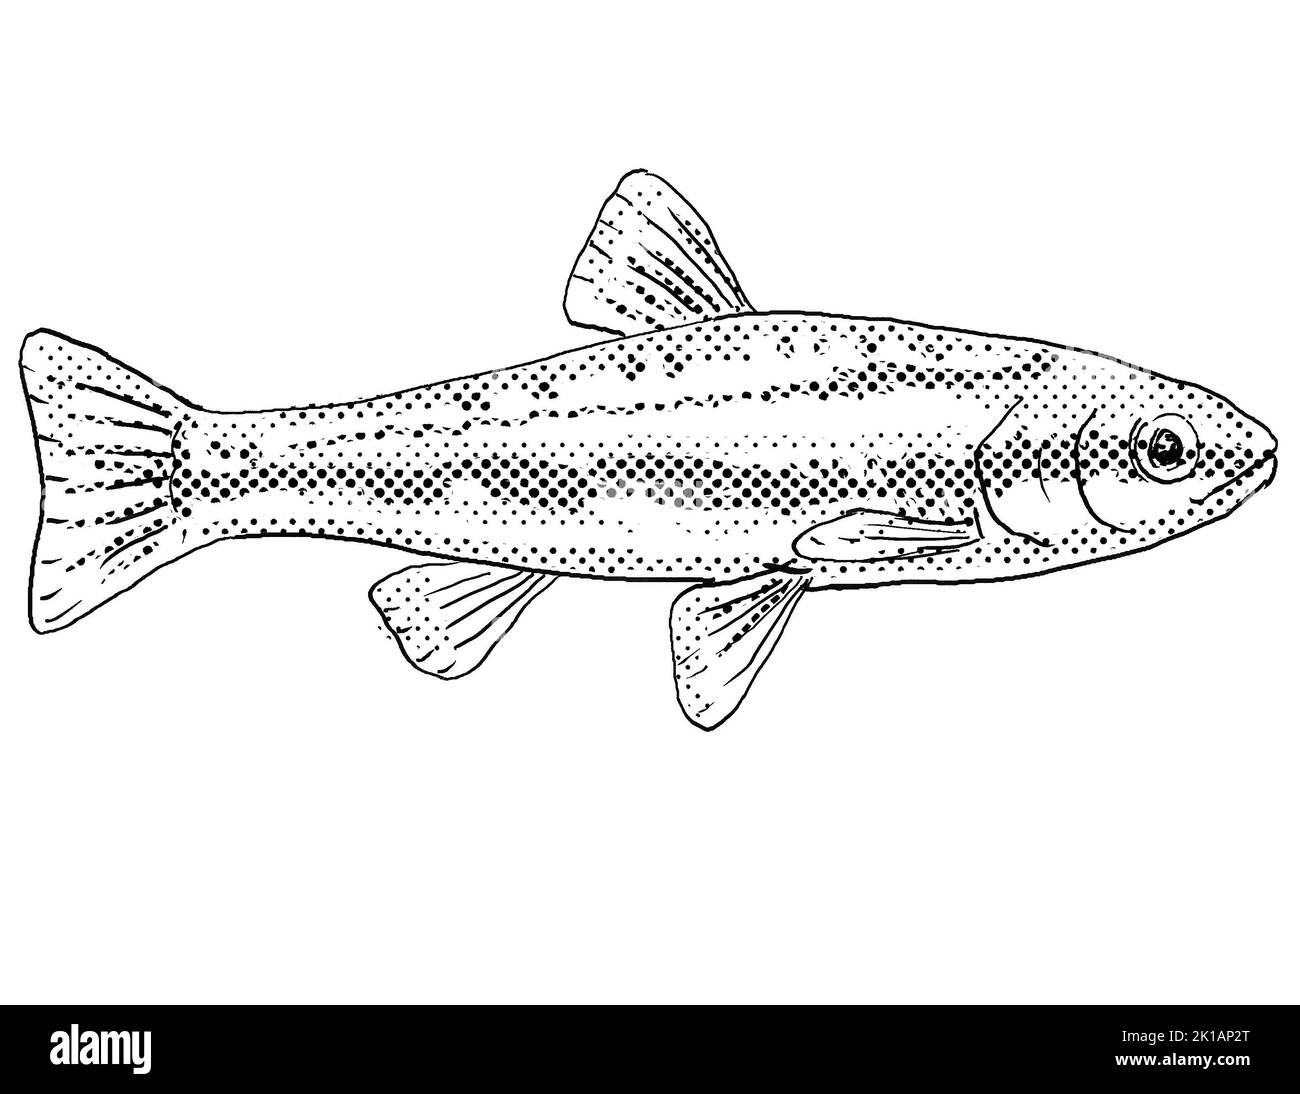 Cartoon-Stil Linienzeichnung eines Laurel-Dace oder Chrosomus saylori, ein Süßwasserfisch endemisch in Nordamerika mit Halbtonpunkten Schattierung auf isolierten BA Stockfoto